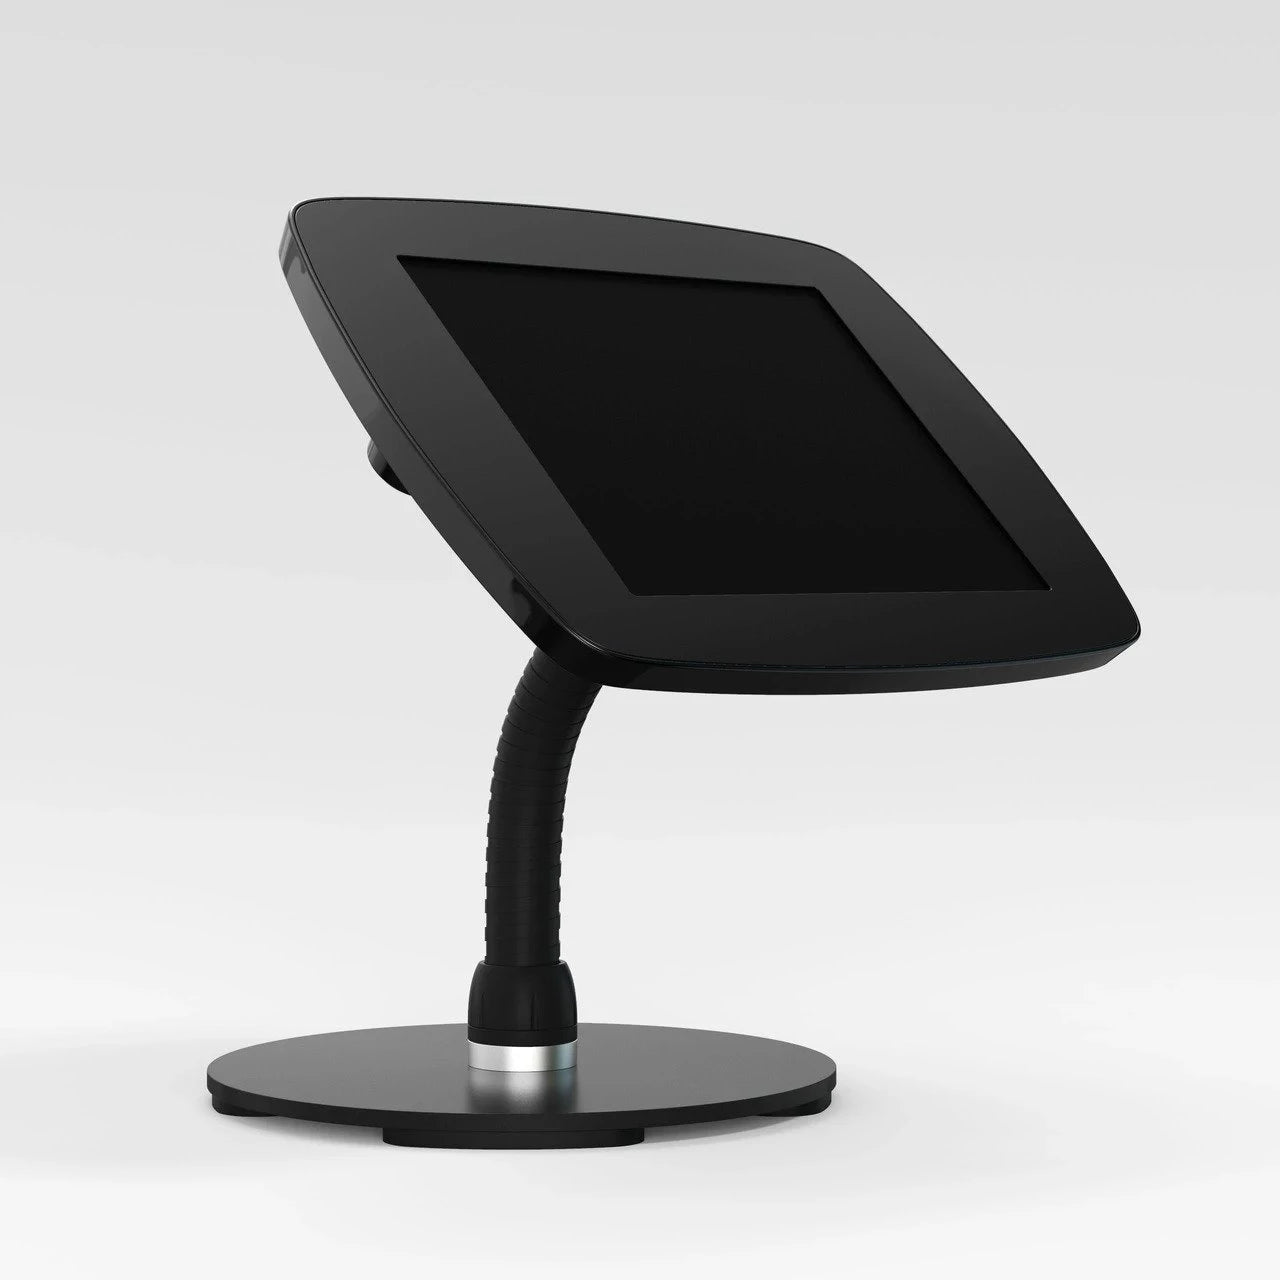 surface tablet desk mounts